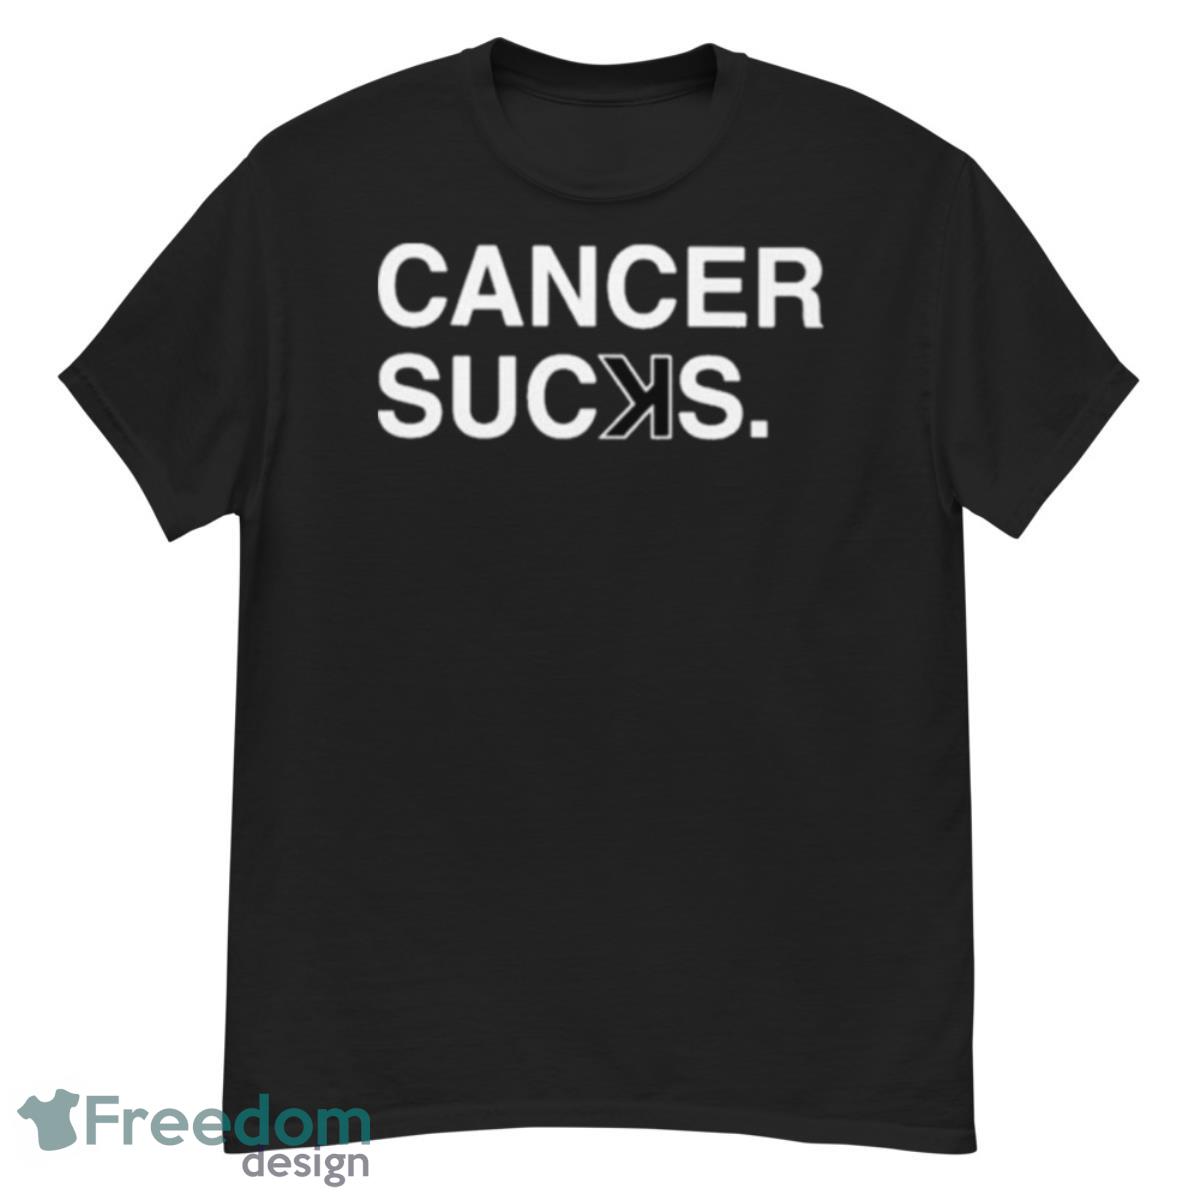 Cancer sucks 2023 shirt - G500 Men’s Classic T-Shirt